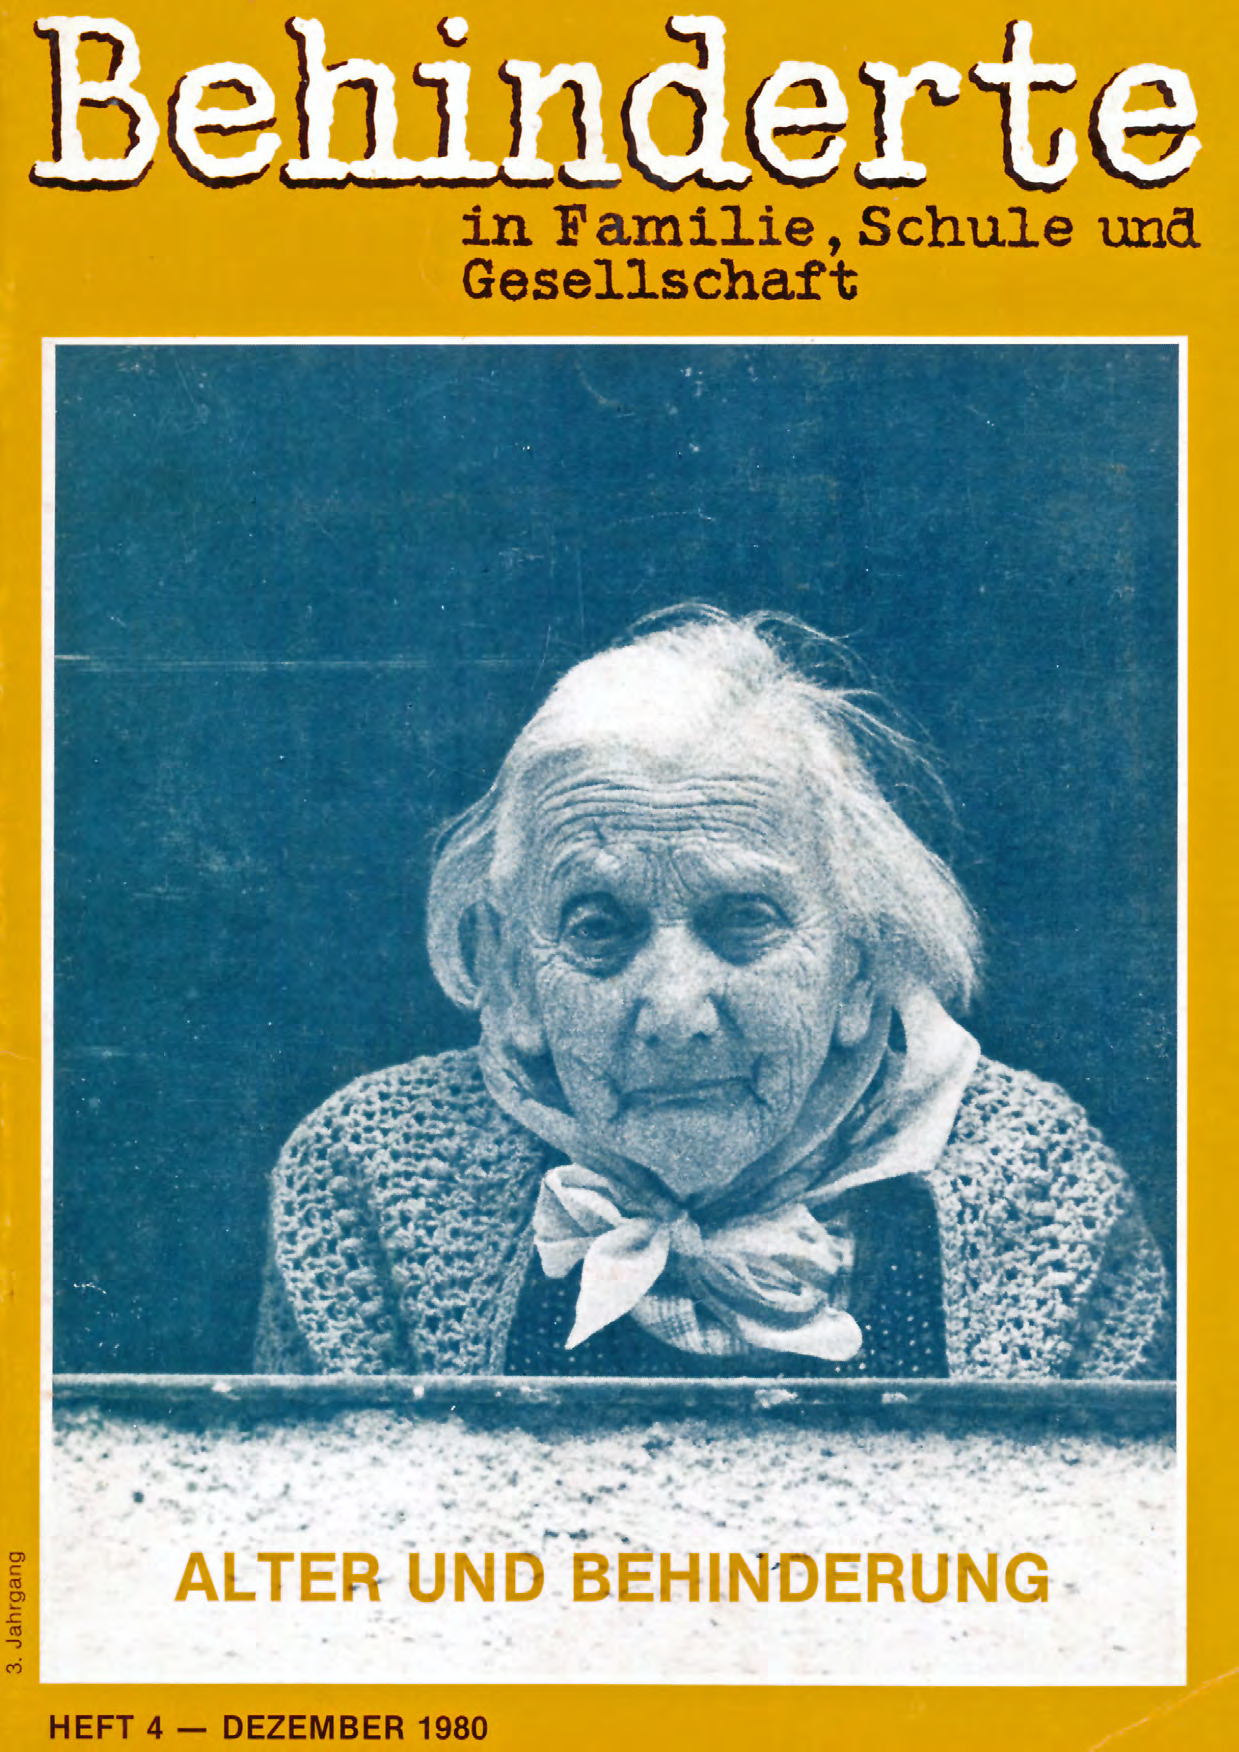 Titelbild der Zeitschrift BEHINDERTE MENSCHEN, Ausgabe 4/1980 "Alter und Behinderung"